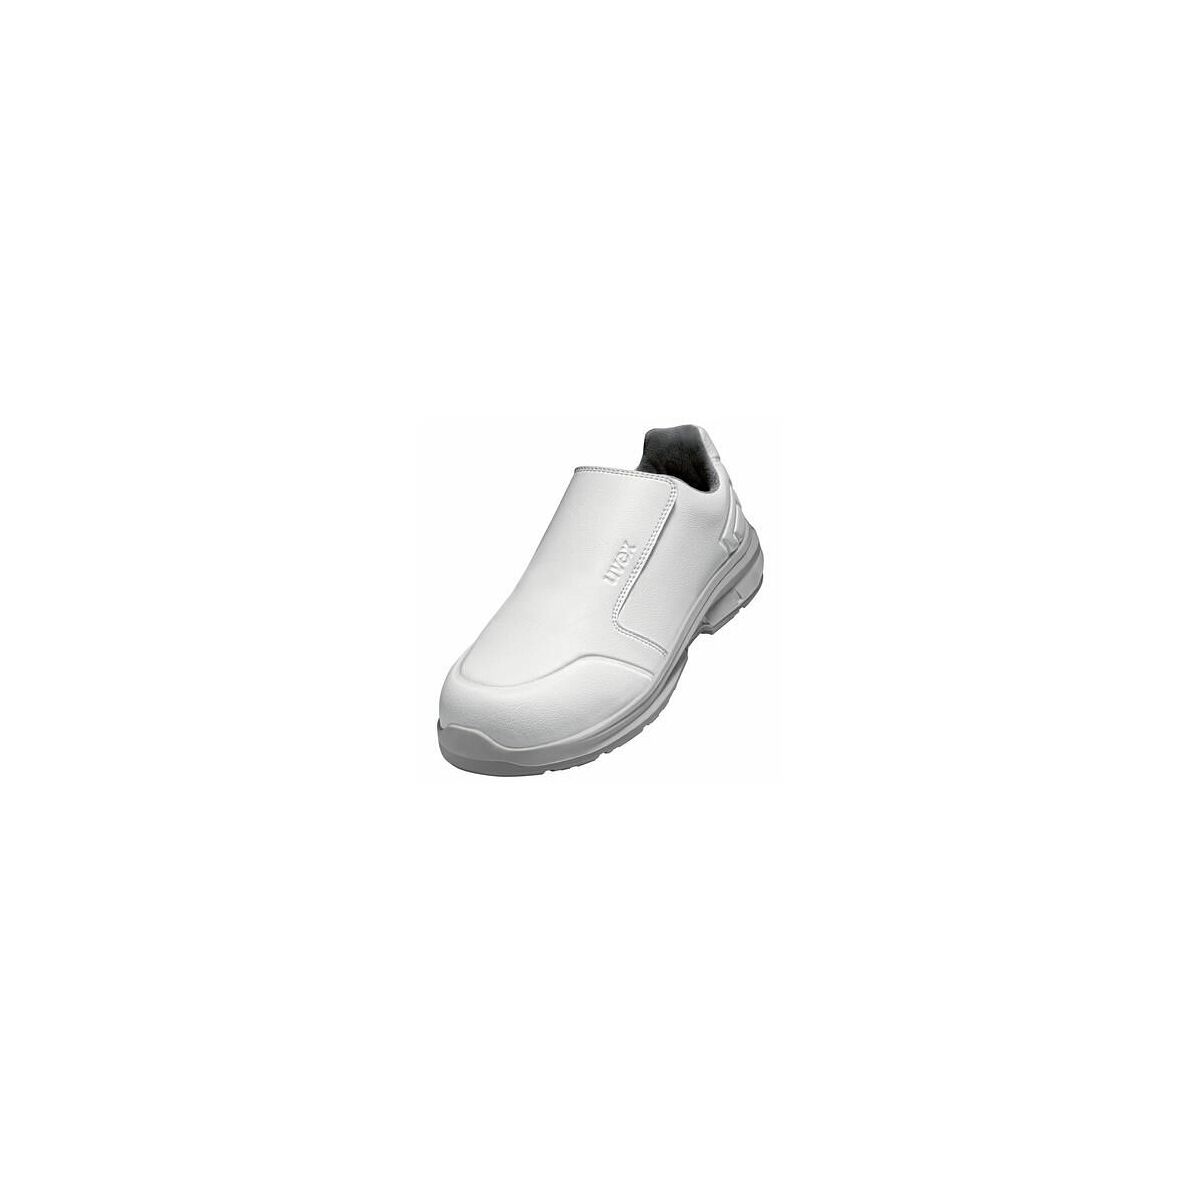 uvex 1 sport white Halbschuhe S2 weiß Weite 11 Größe 48 einfach kaufen |  Hoffmann Group